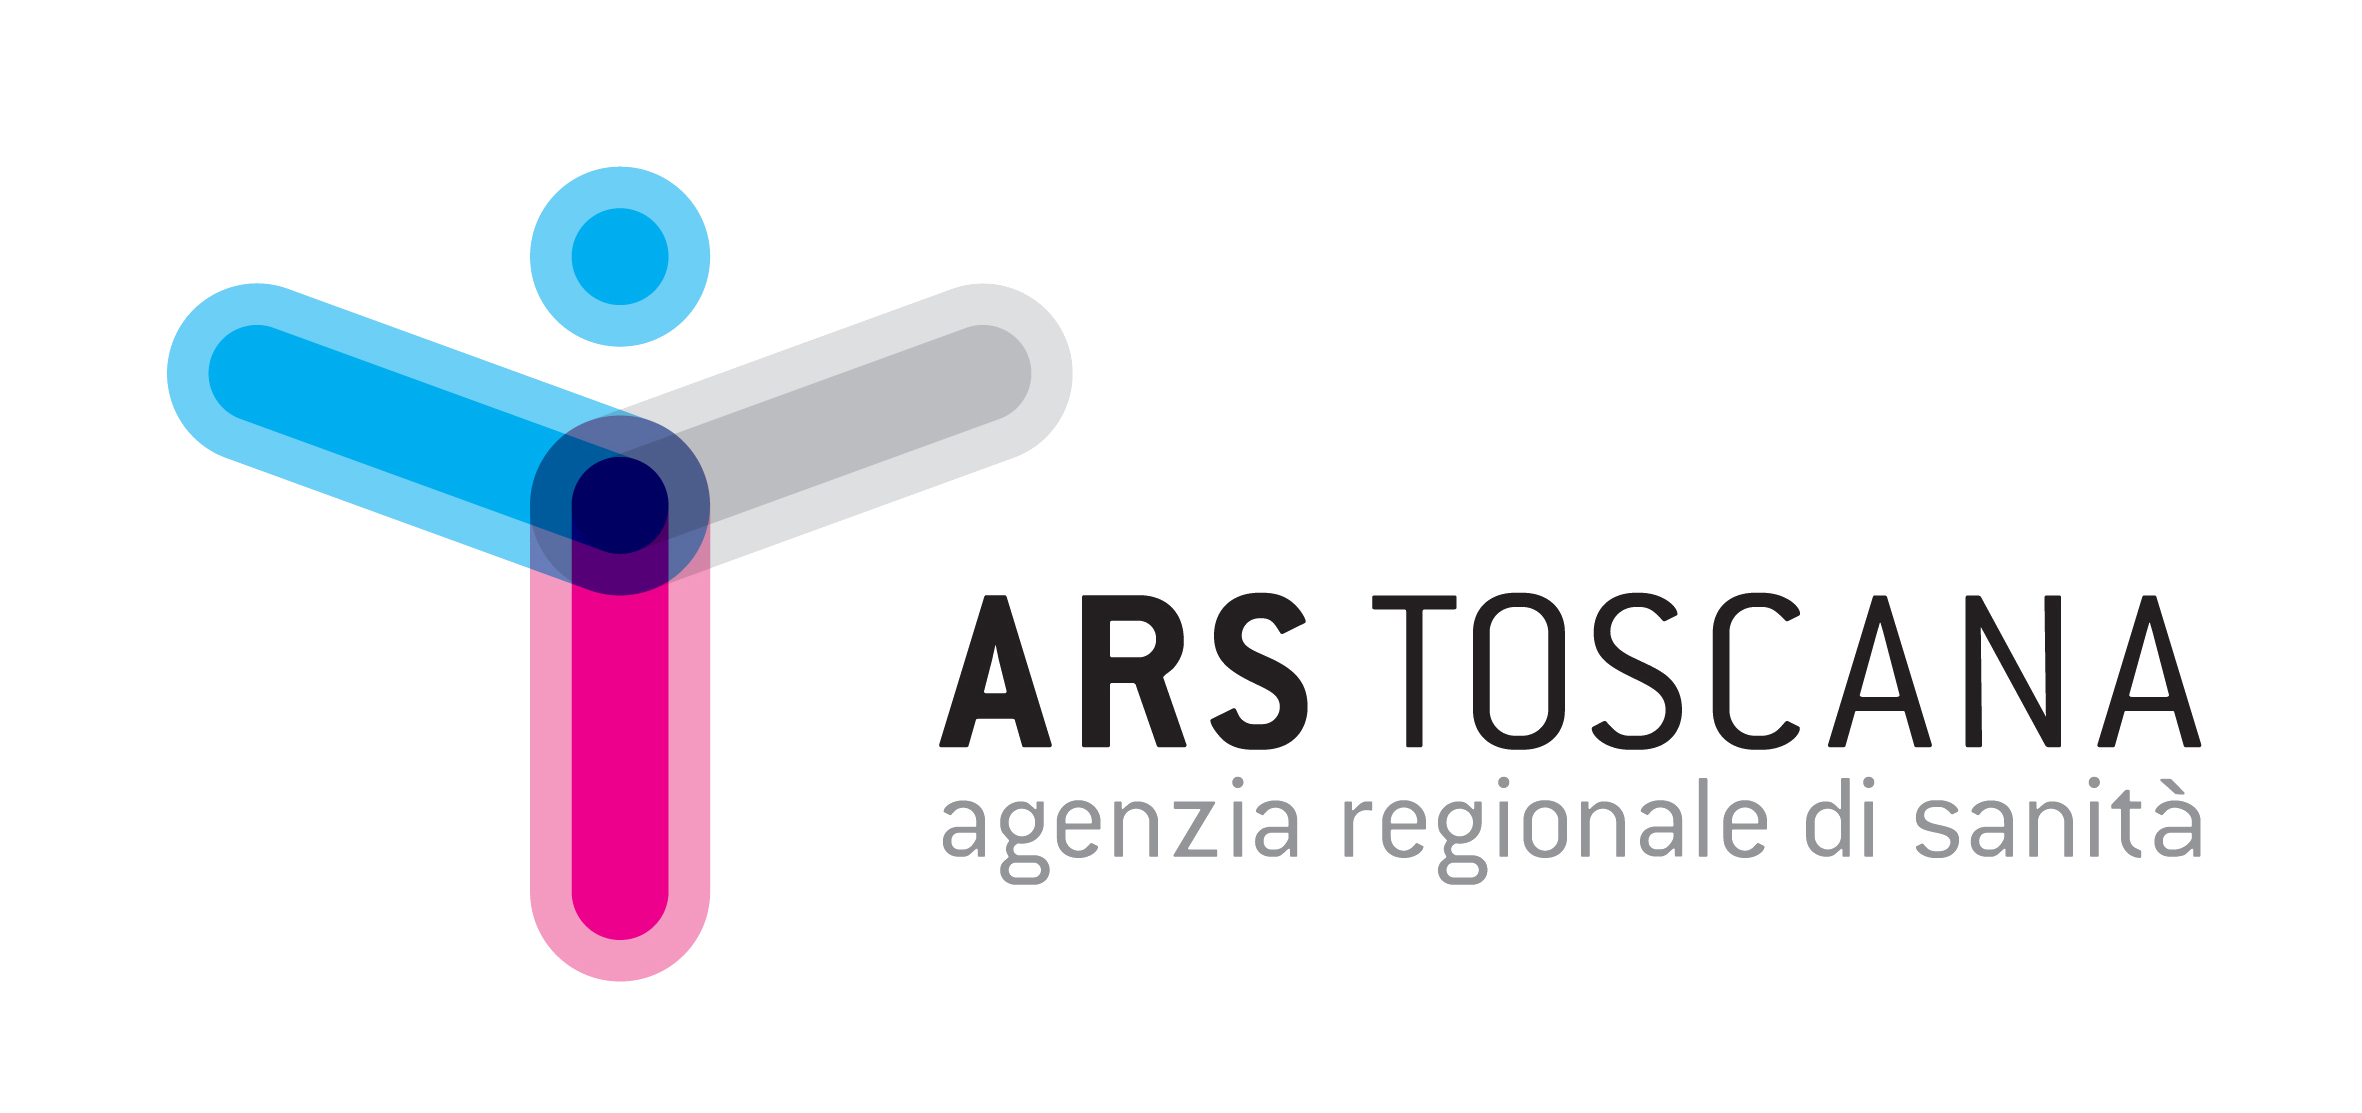 Agenzia regionale di sanità della Toscana